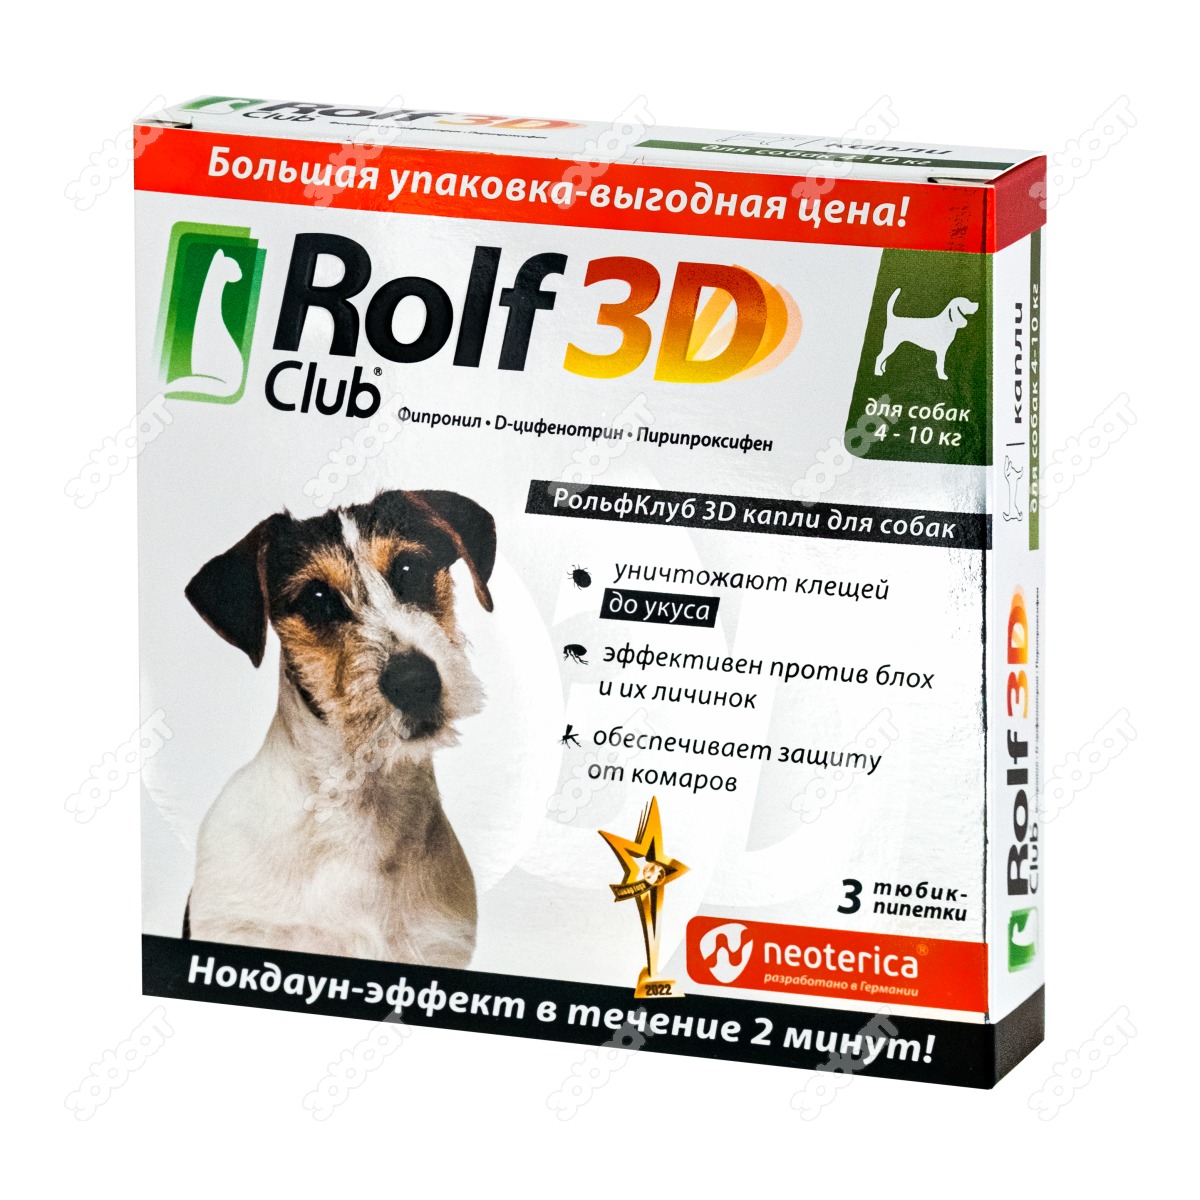 Бинакар капли для собак цена. РОЛЬФ 3д капли для собак до 4 кг. РОЛЬФ 3д капли для собак до 5 кг. Конъюктивин ROLFCLUB для собак. РОЛЬФ клуб 3d капли для собак 4-8 кг.